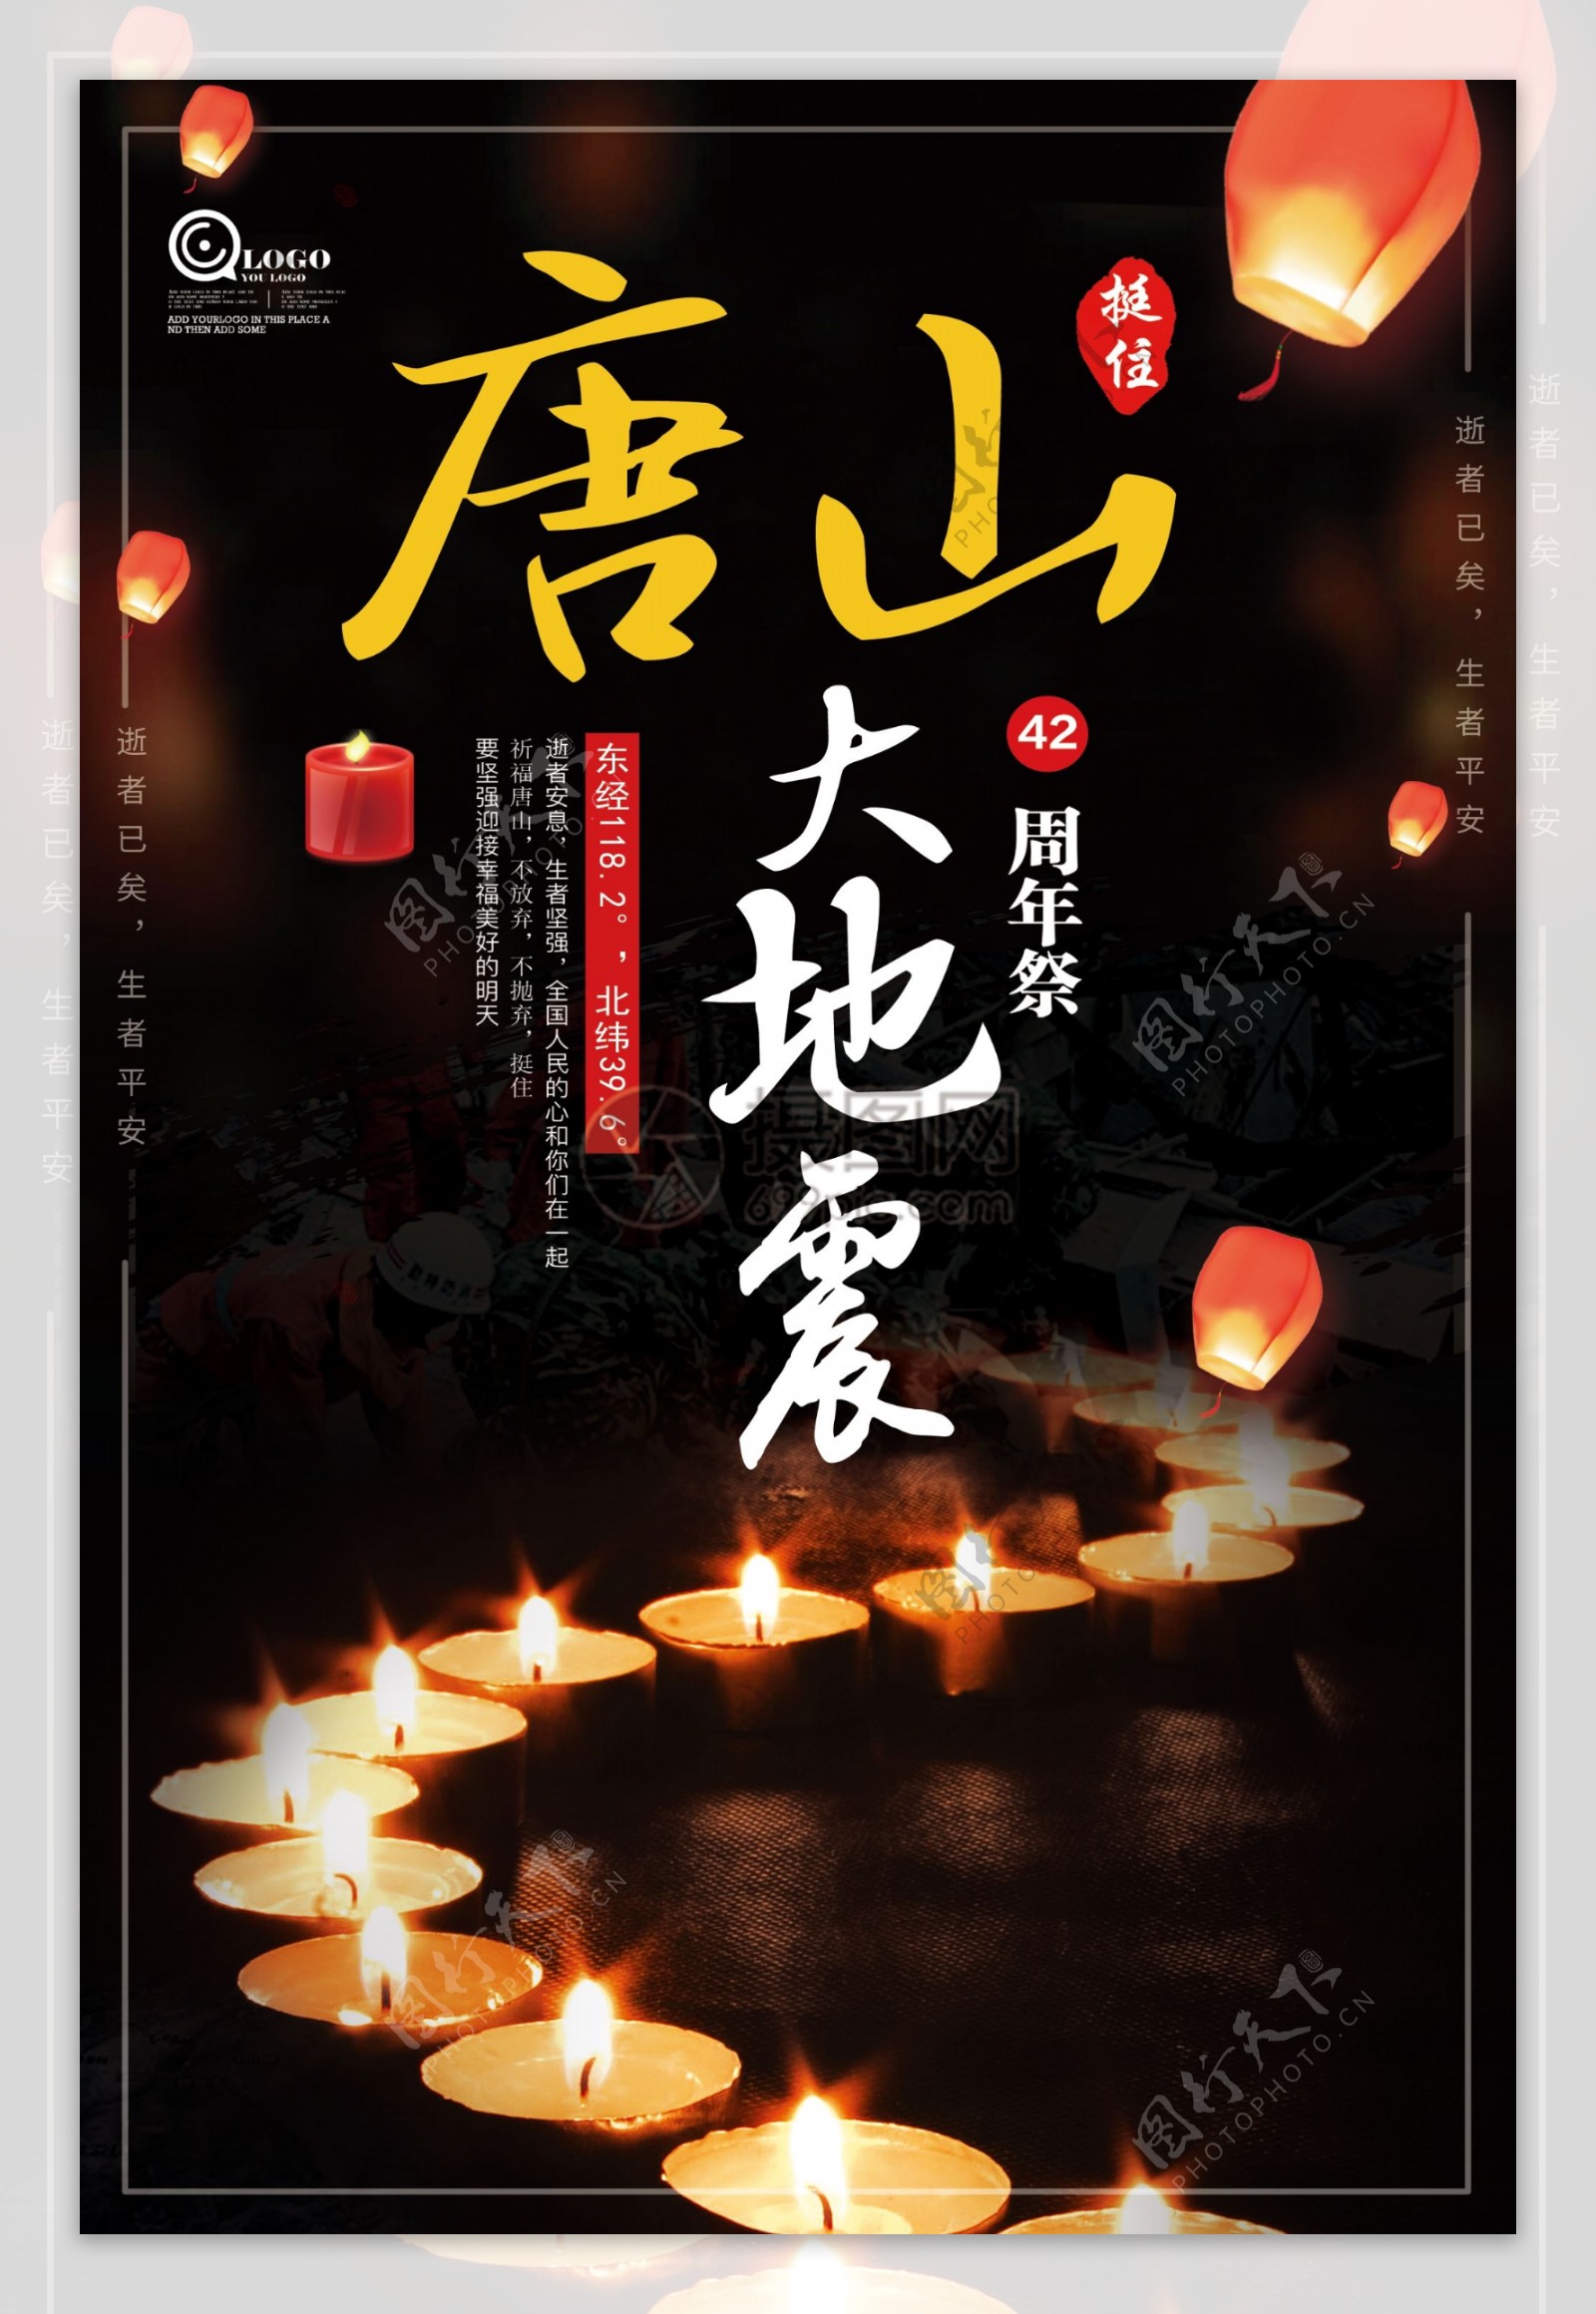 祈福唐山大地震42周年祭海报设计